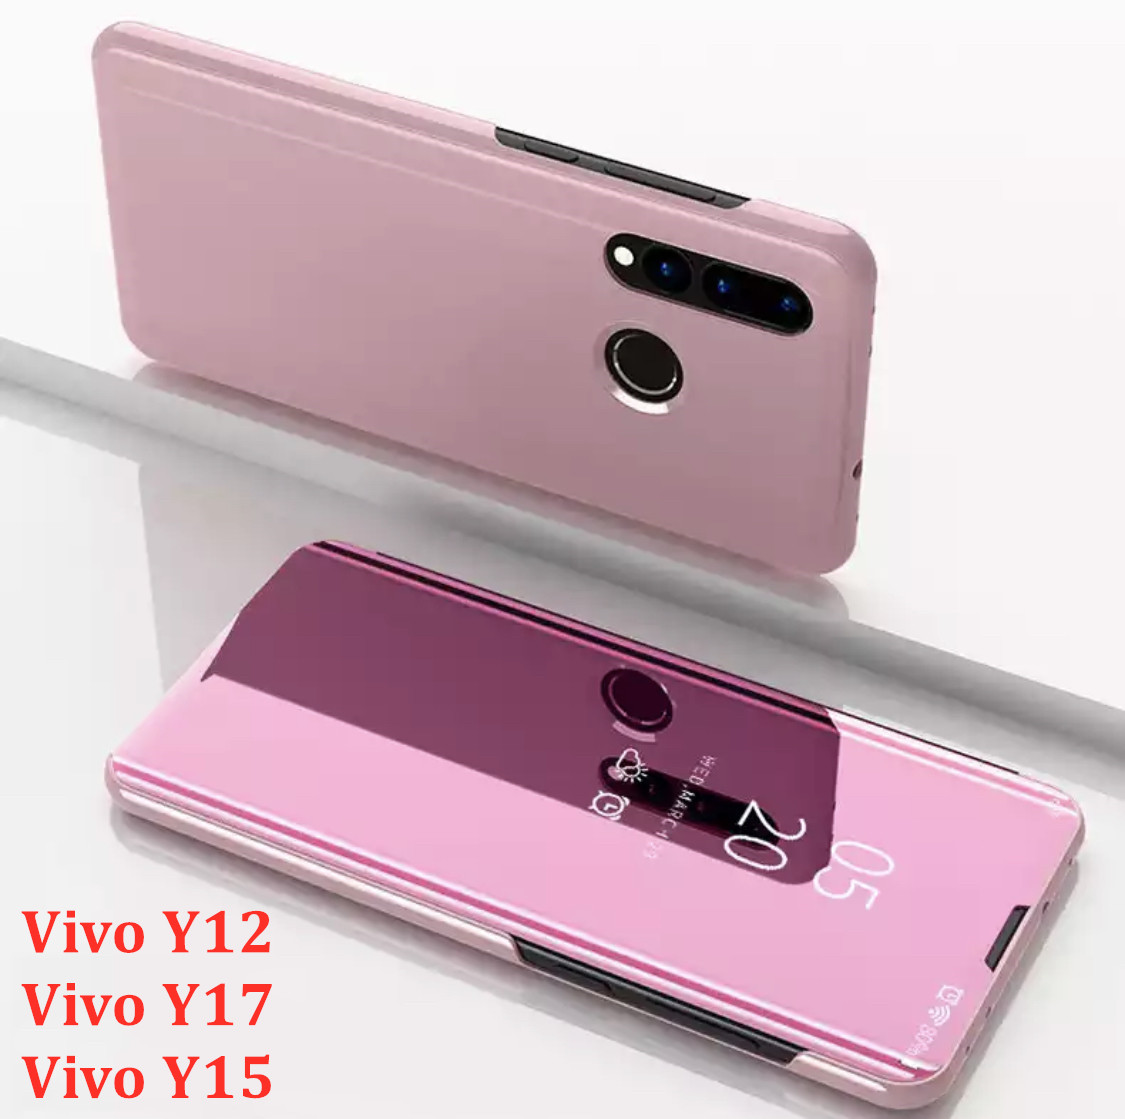 [ส่งจากไทย] Case Vivo Y17 เคสเปิดปิดเงา สำหรับรุ่น Vivo Y17 ฝาพับ กระเป๋า vivo วาย17 Smart Case เคสวีโว่ Y17 เคสฝาเปิดปิดเงา สมาร์ทเคส เคสตั้งได้ Vivo Y17 Flip Mirror Leather Case With Stand Holder เคสมือถือ เคสโทรศัพท์ รับประกันความพอใจ สี สีชมพู